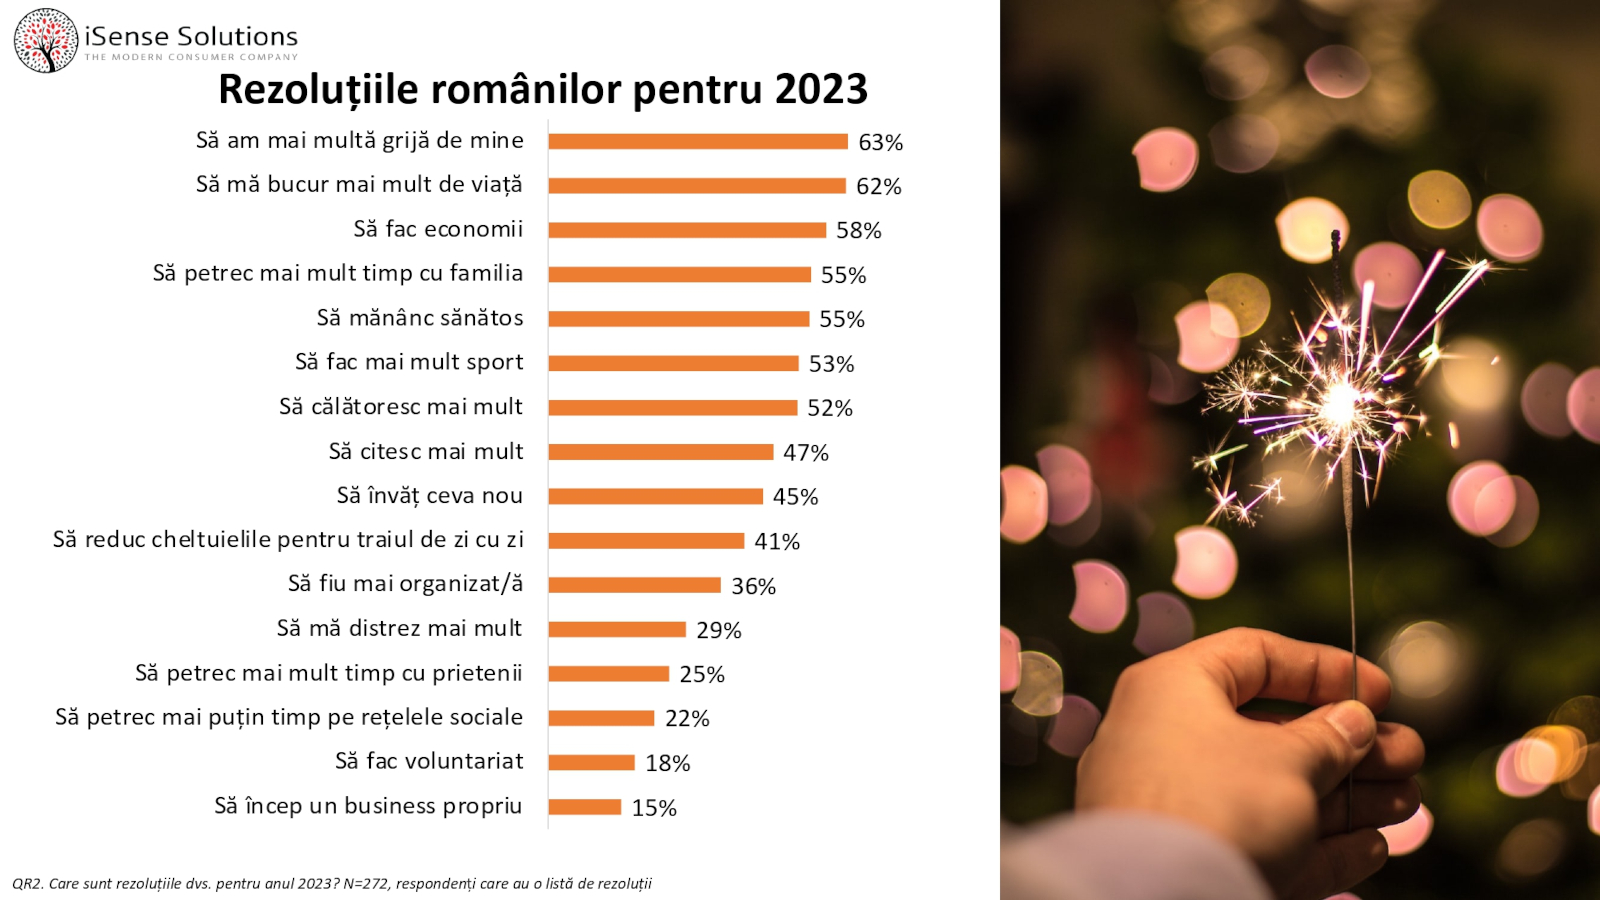 Planuri 2023: 63% dintre români își doresc să aibă mai multă grijă de ei în 2023